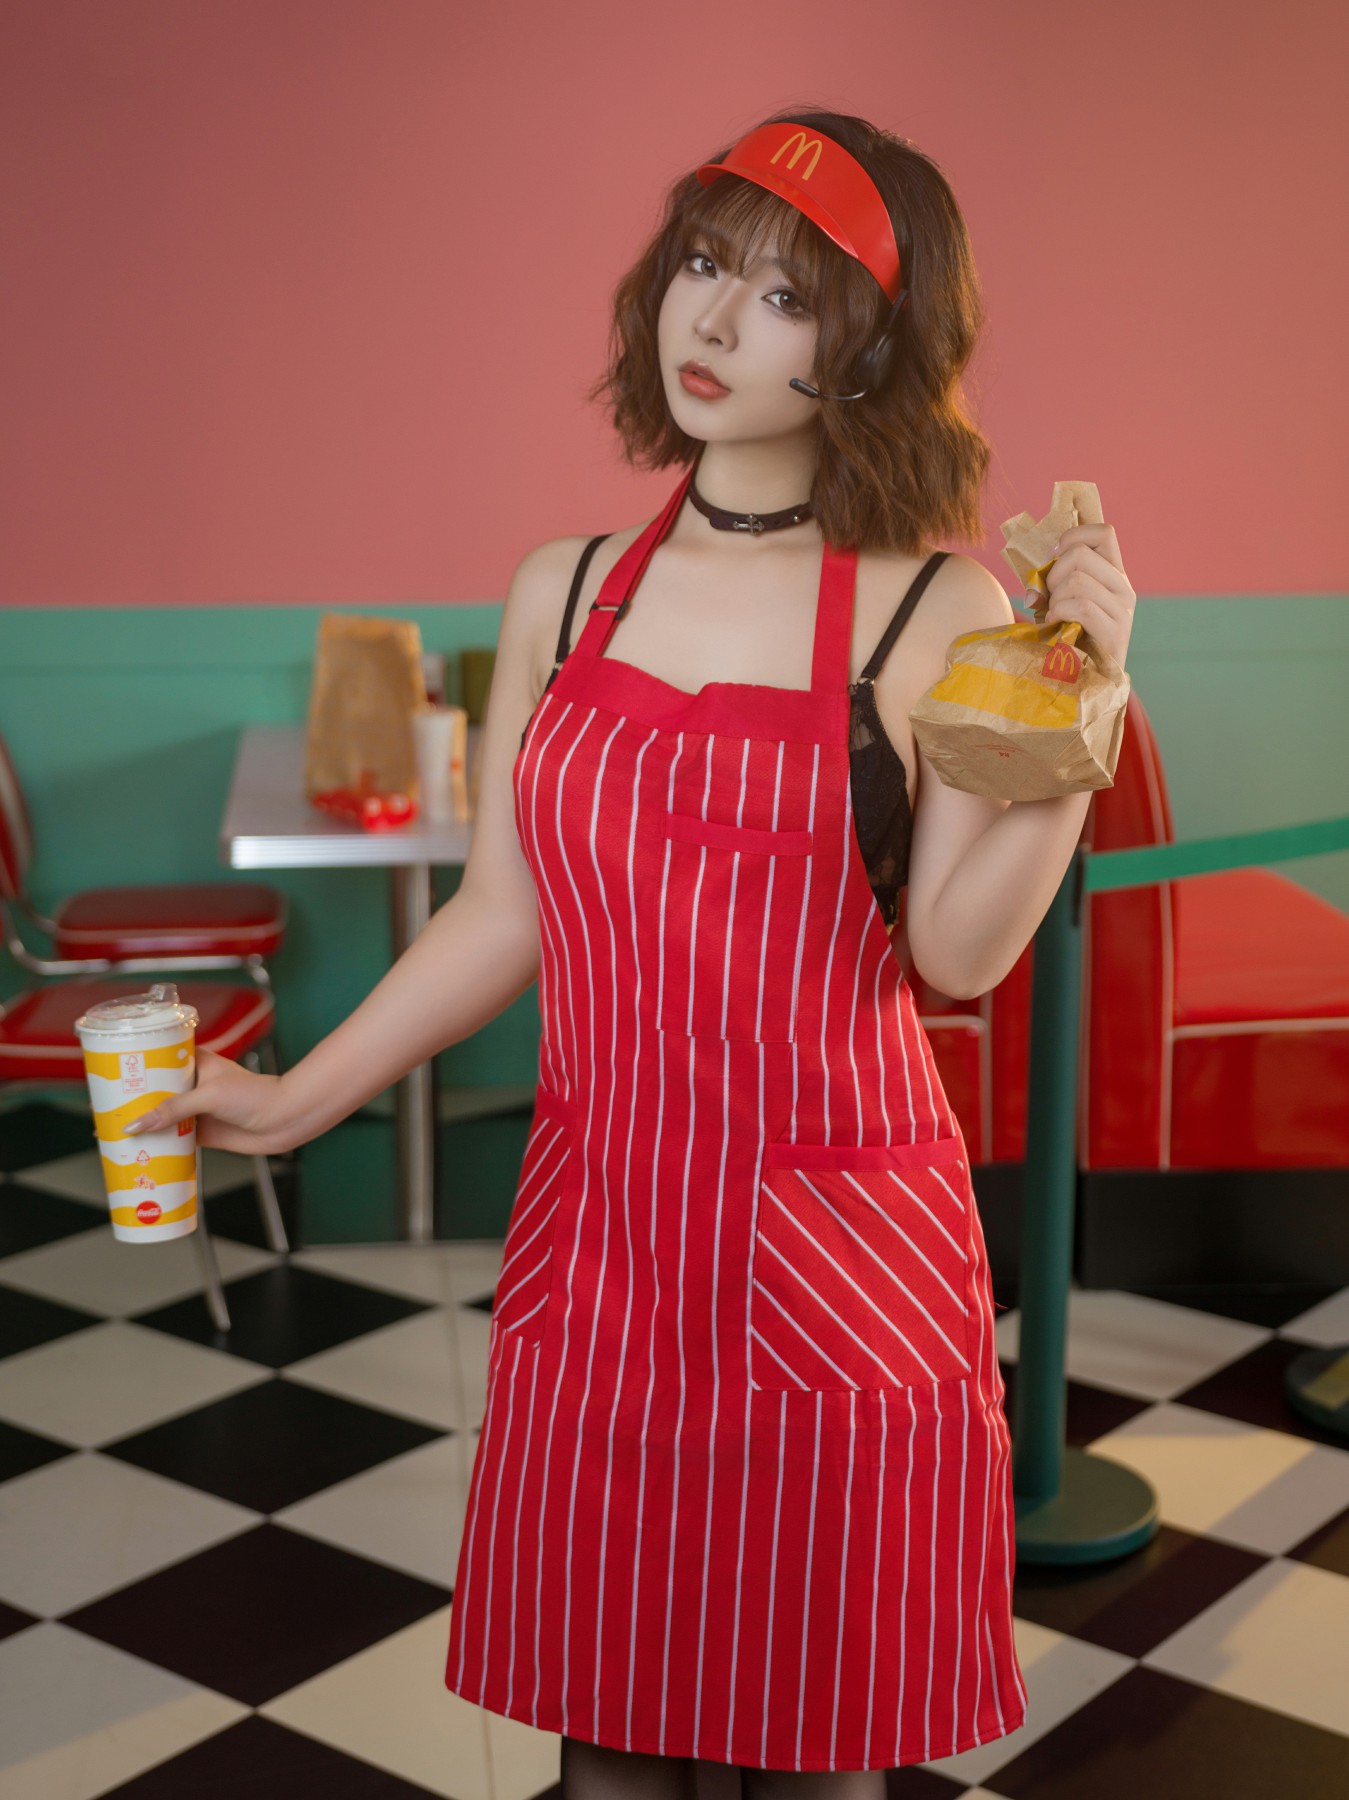 yuuhui玉汇 – 麦当劳的女服务员 第1张